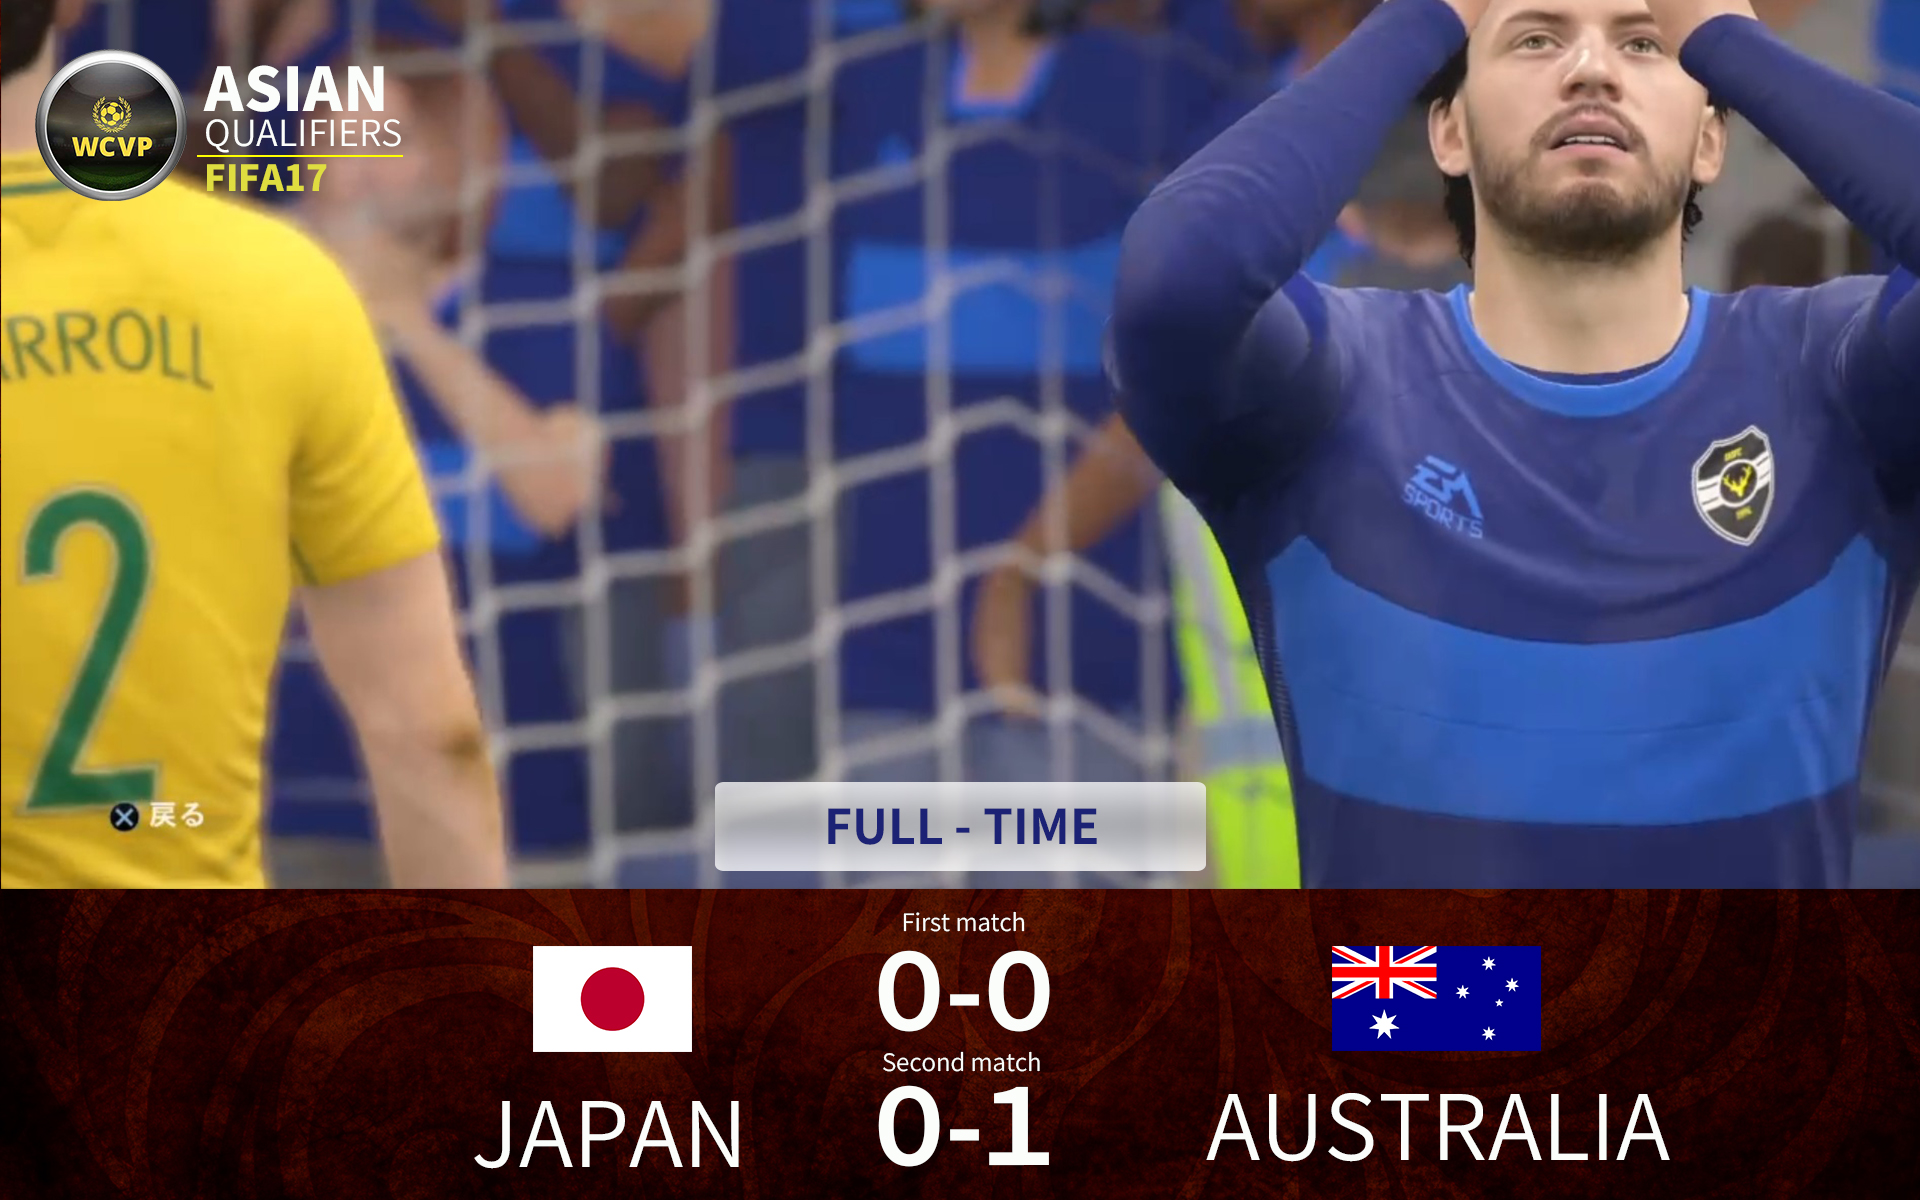 日本 オーストラリア相手に苦しいスタートを切る Fifa17 世界大会wcvpアジア予選 サッカーキング